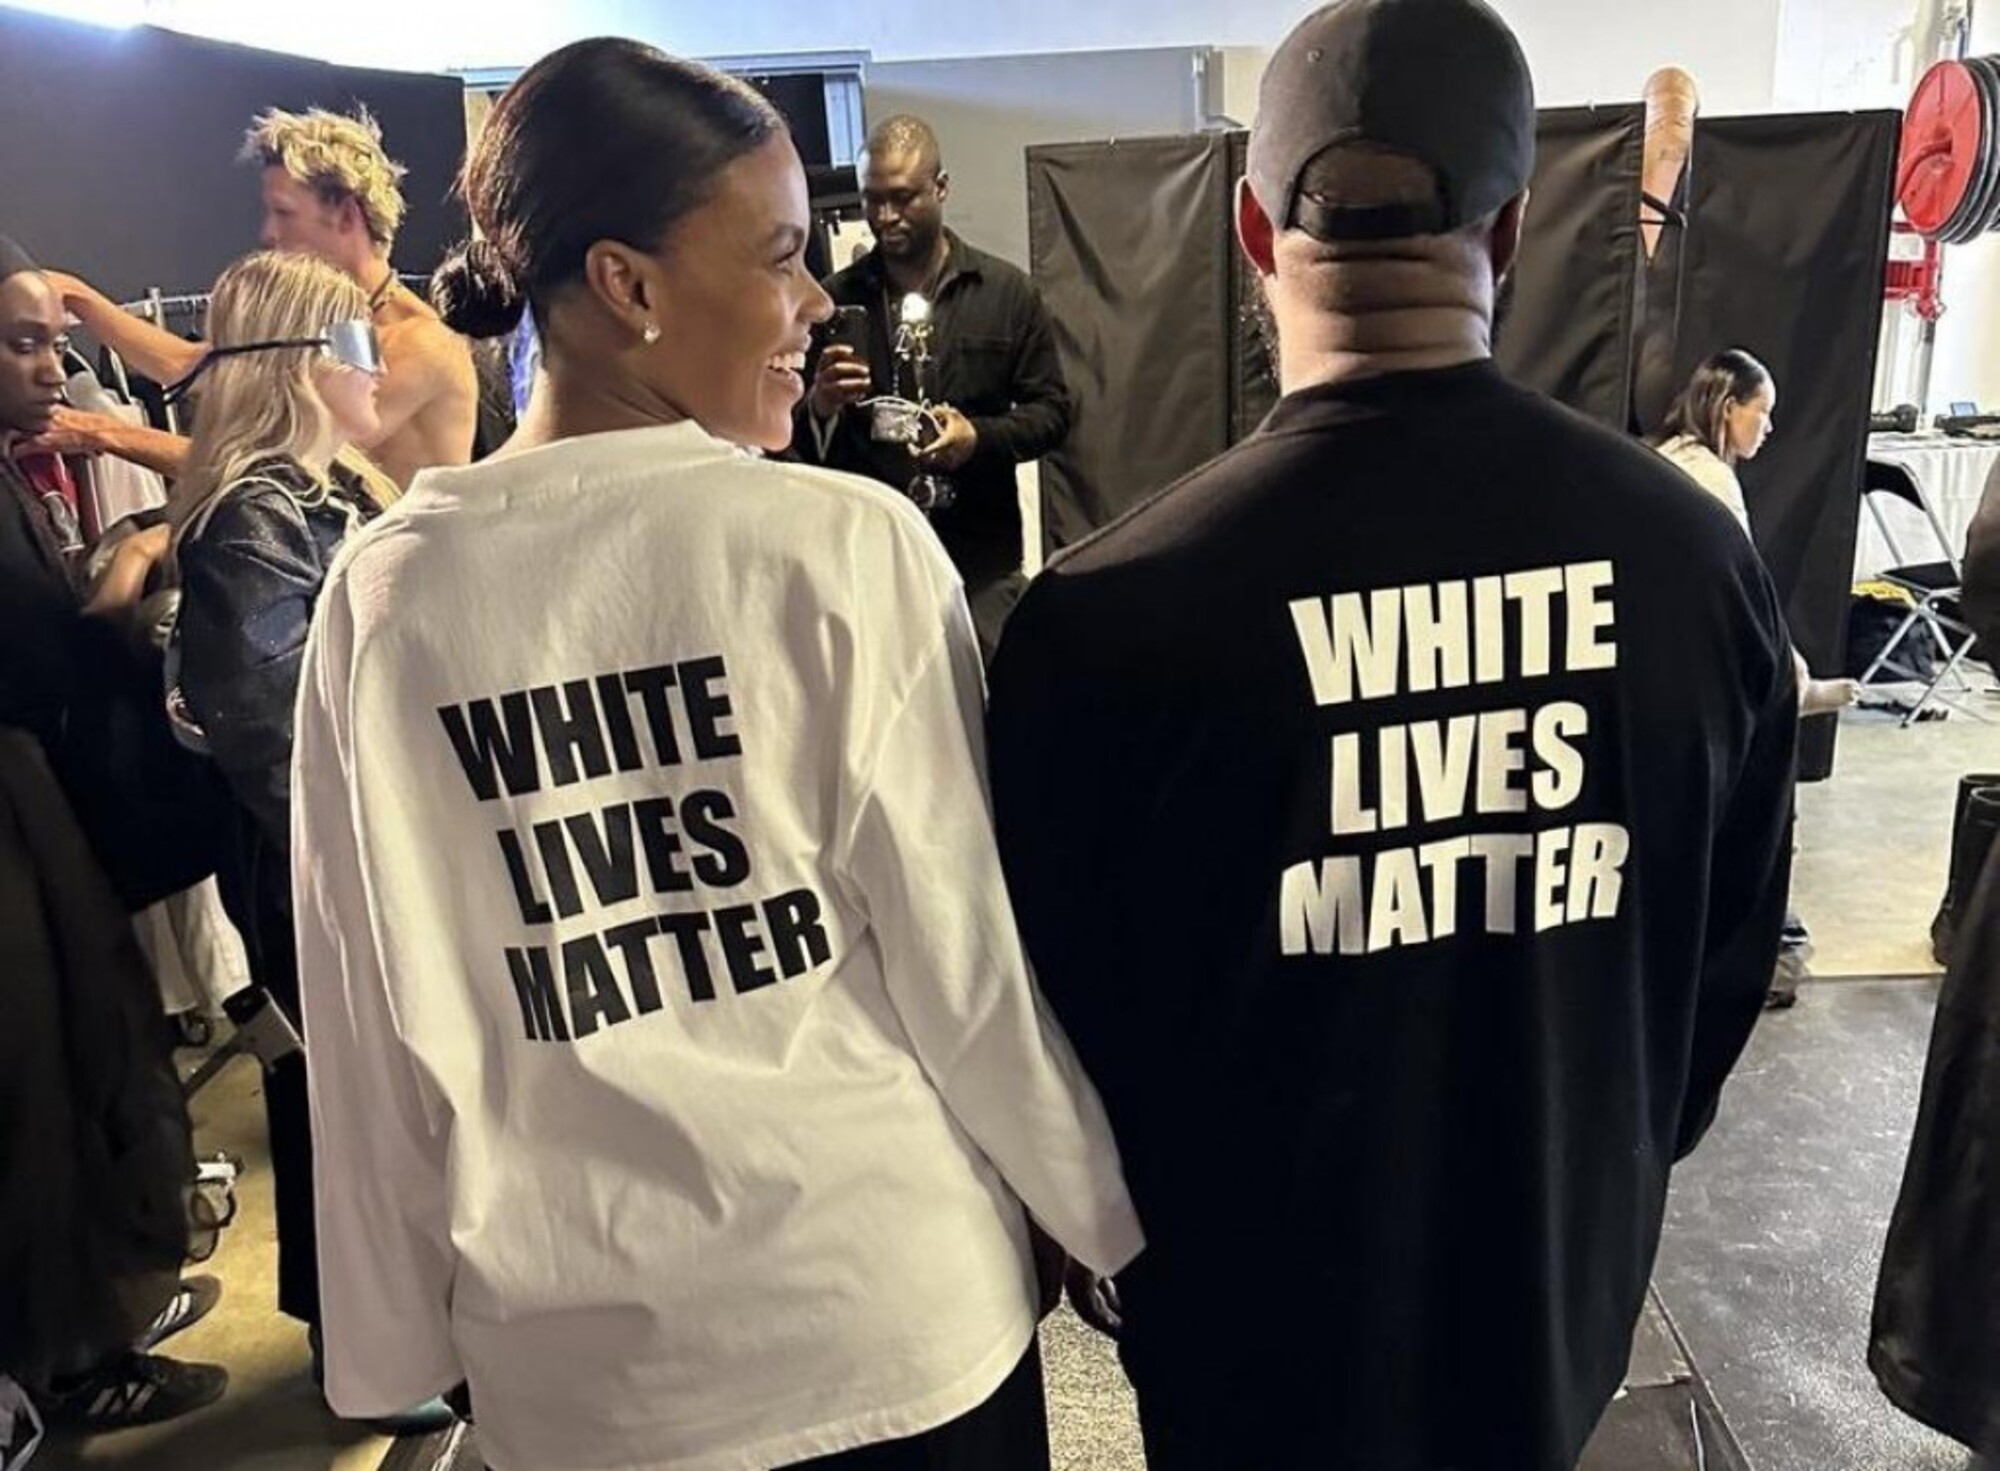 Raper Kanye West vyvolal kontroverziu mikinou s nápisom White Lives Matter, ktorý používajú pravicoví extrémisti hlásajúci nadradenosť bielej rasy. (4. október)